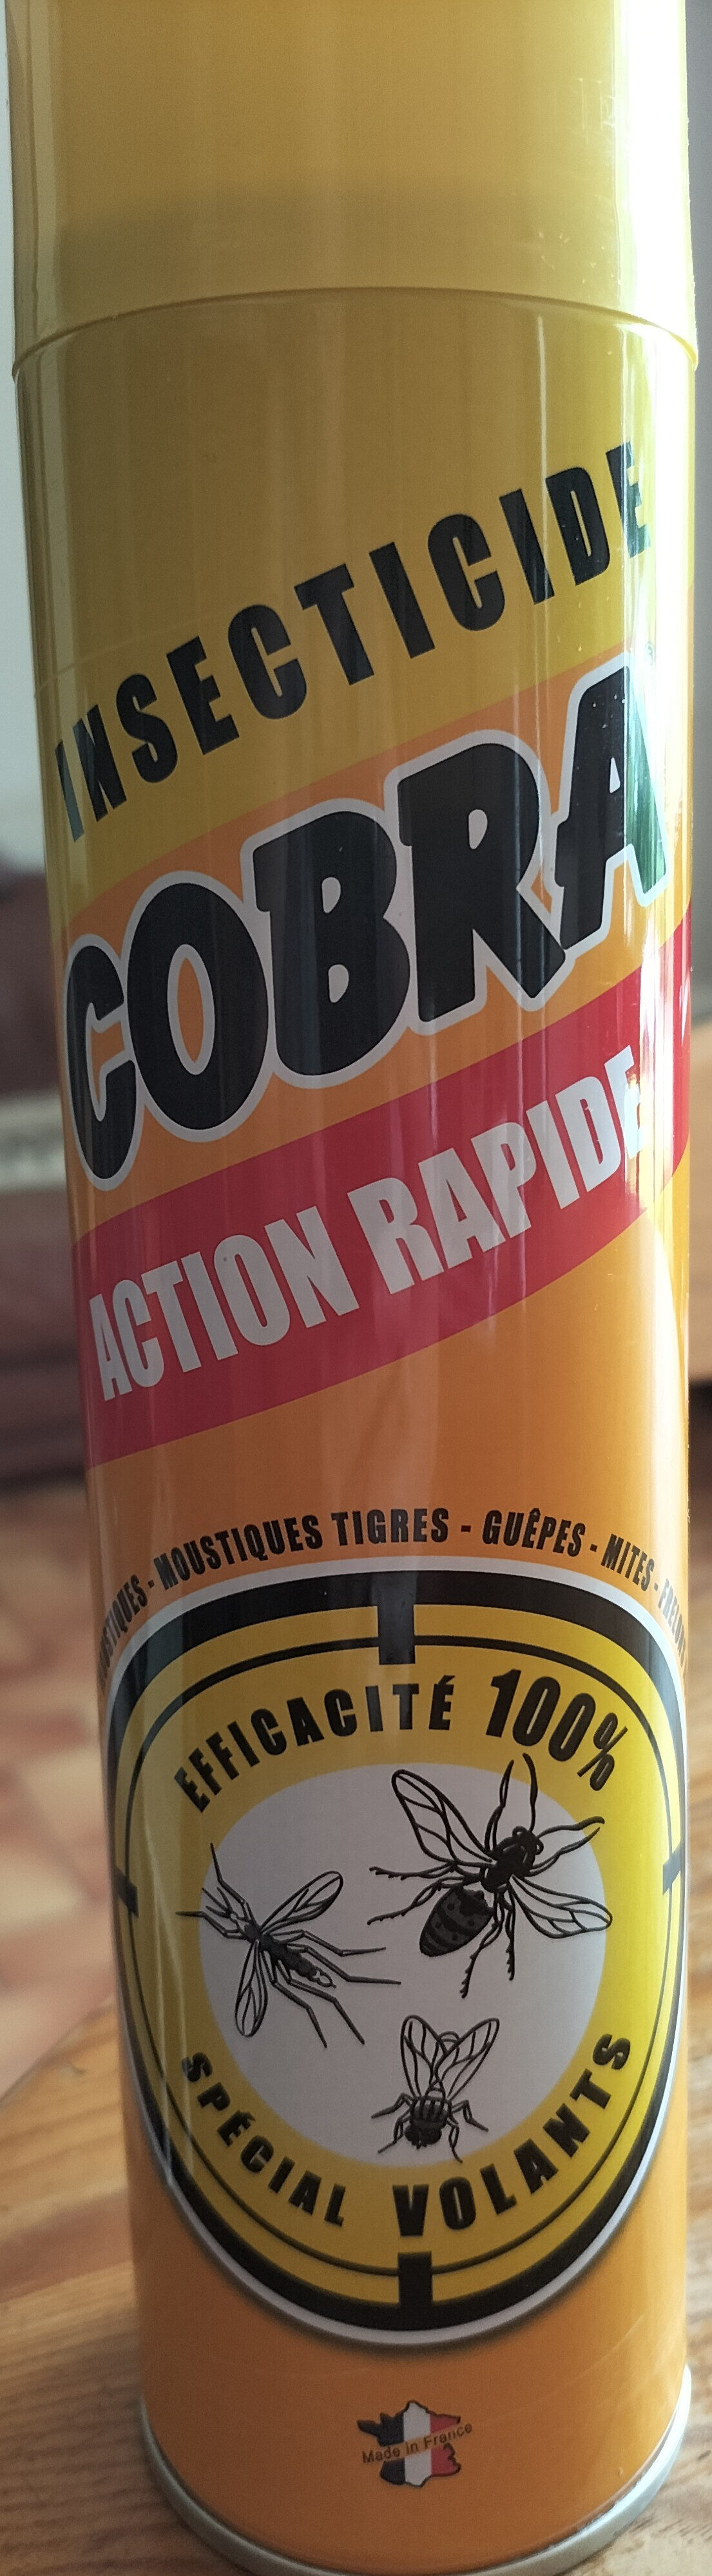 insecticide Cobra spécial volants - Produit - fr